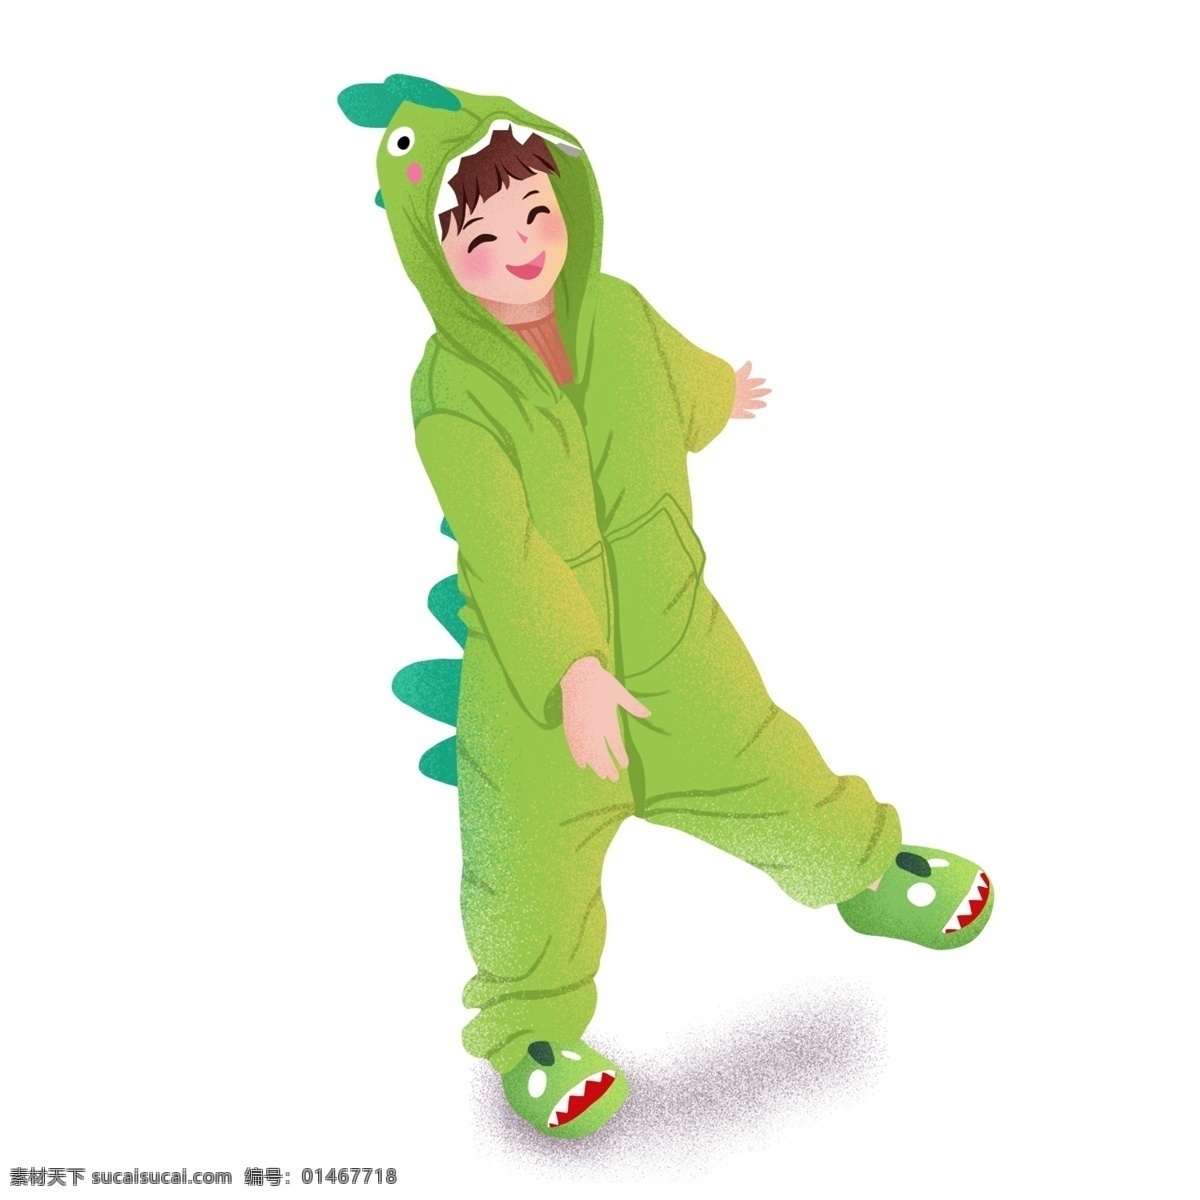 手绘 卡通 男孩 穿着 绿色 恐龙 睡衣 原创 元素 可爱 设计元素 原创元素